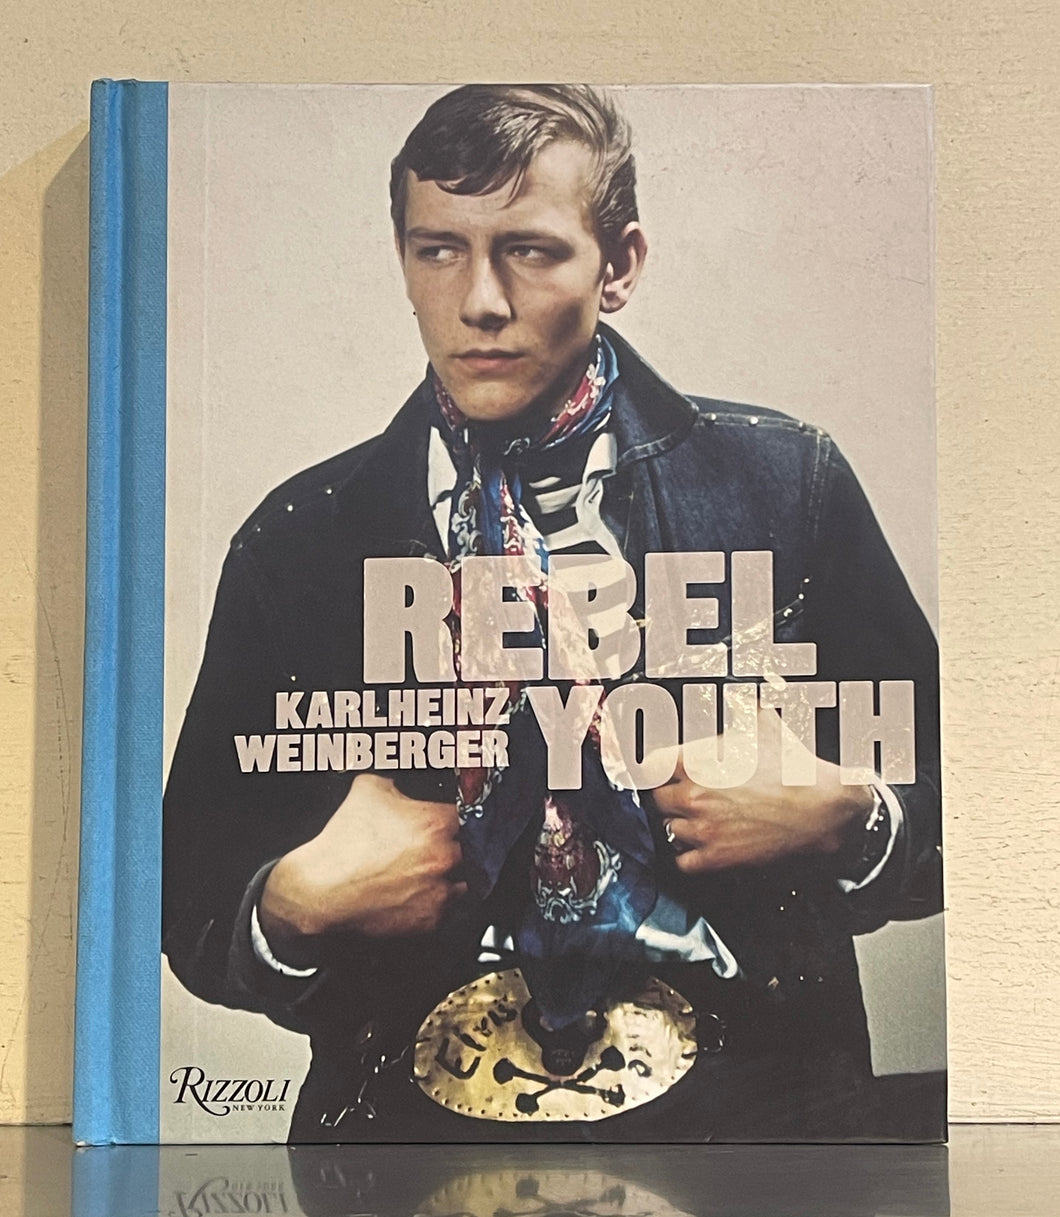 Rebel Youth Karlheinz Weinberger